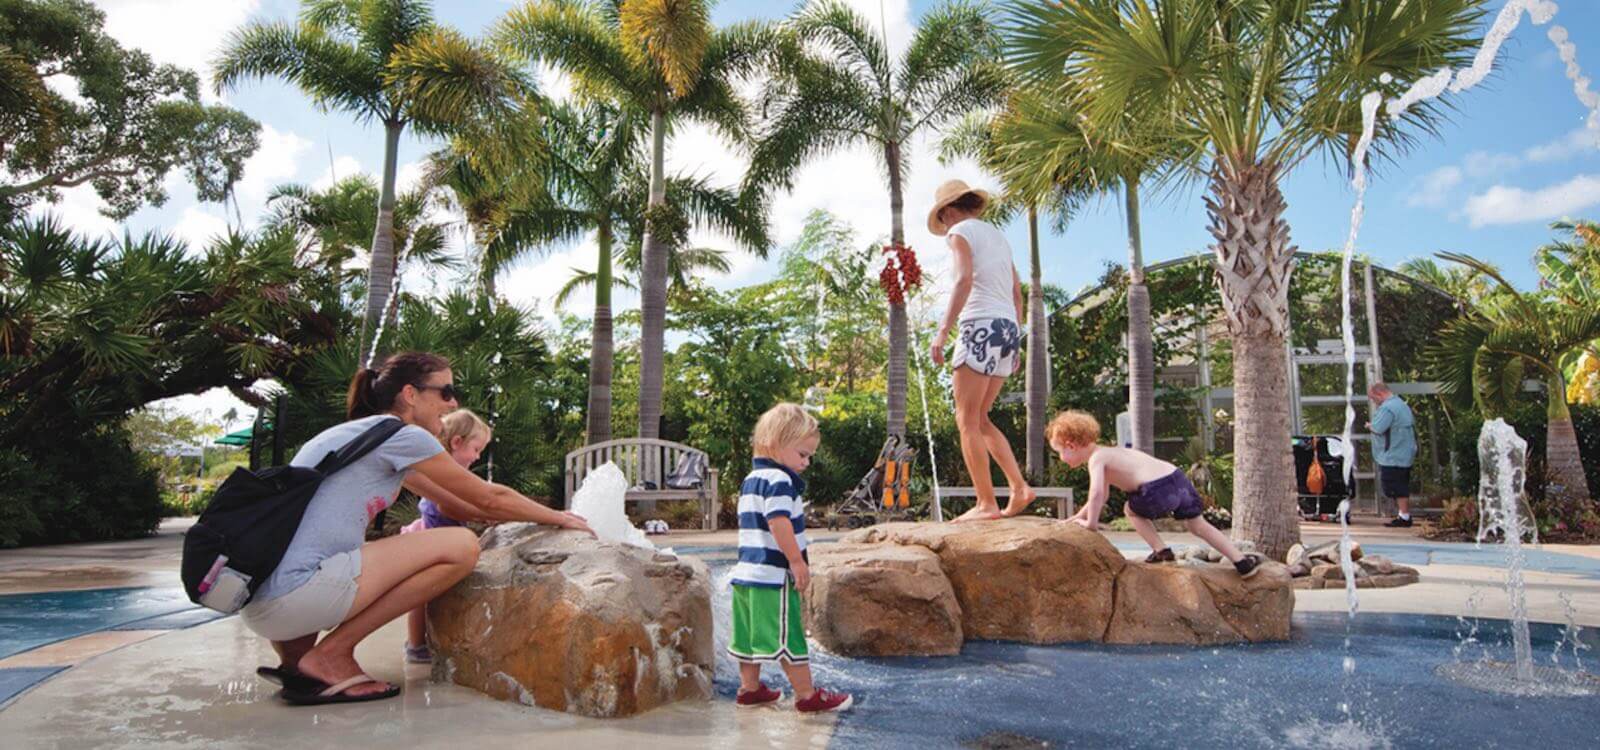 Children's play area at Naples Botanical Gardens, Naples, Florida, USA. Photo by Debi Pittman Wilkey